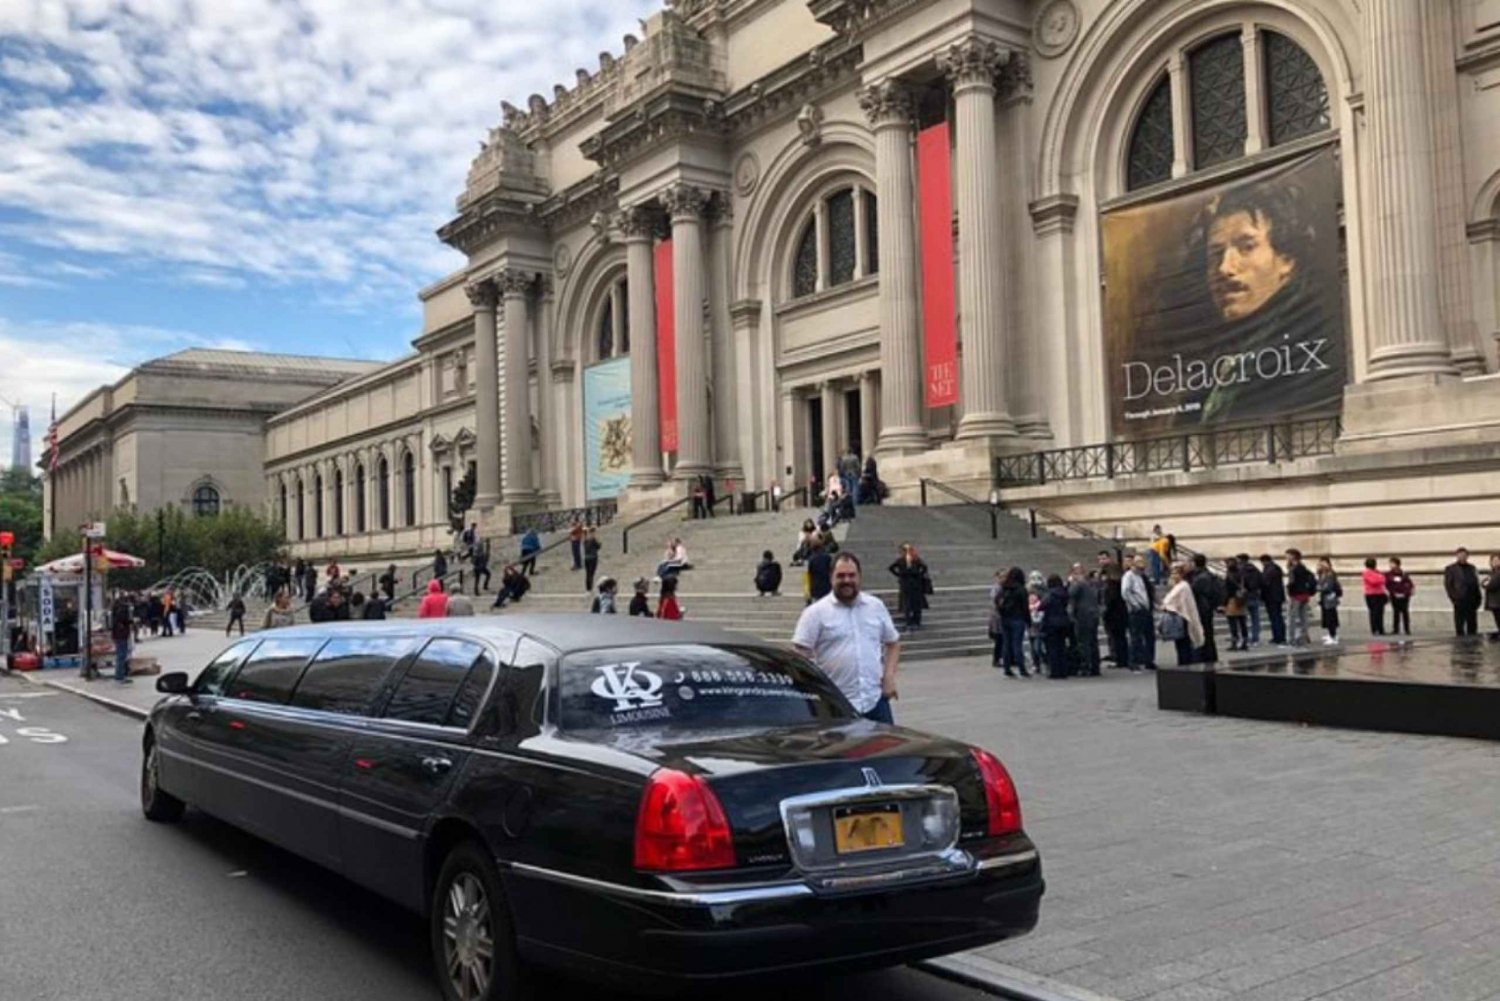 Excursion en limousine à New York en limousine allongée - King And Queen Limo NYC